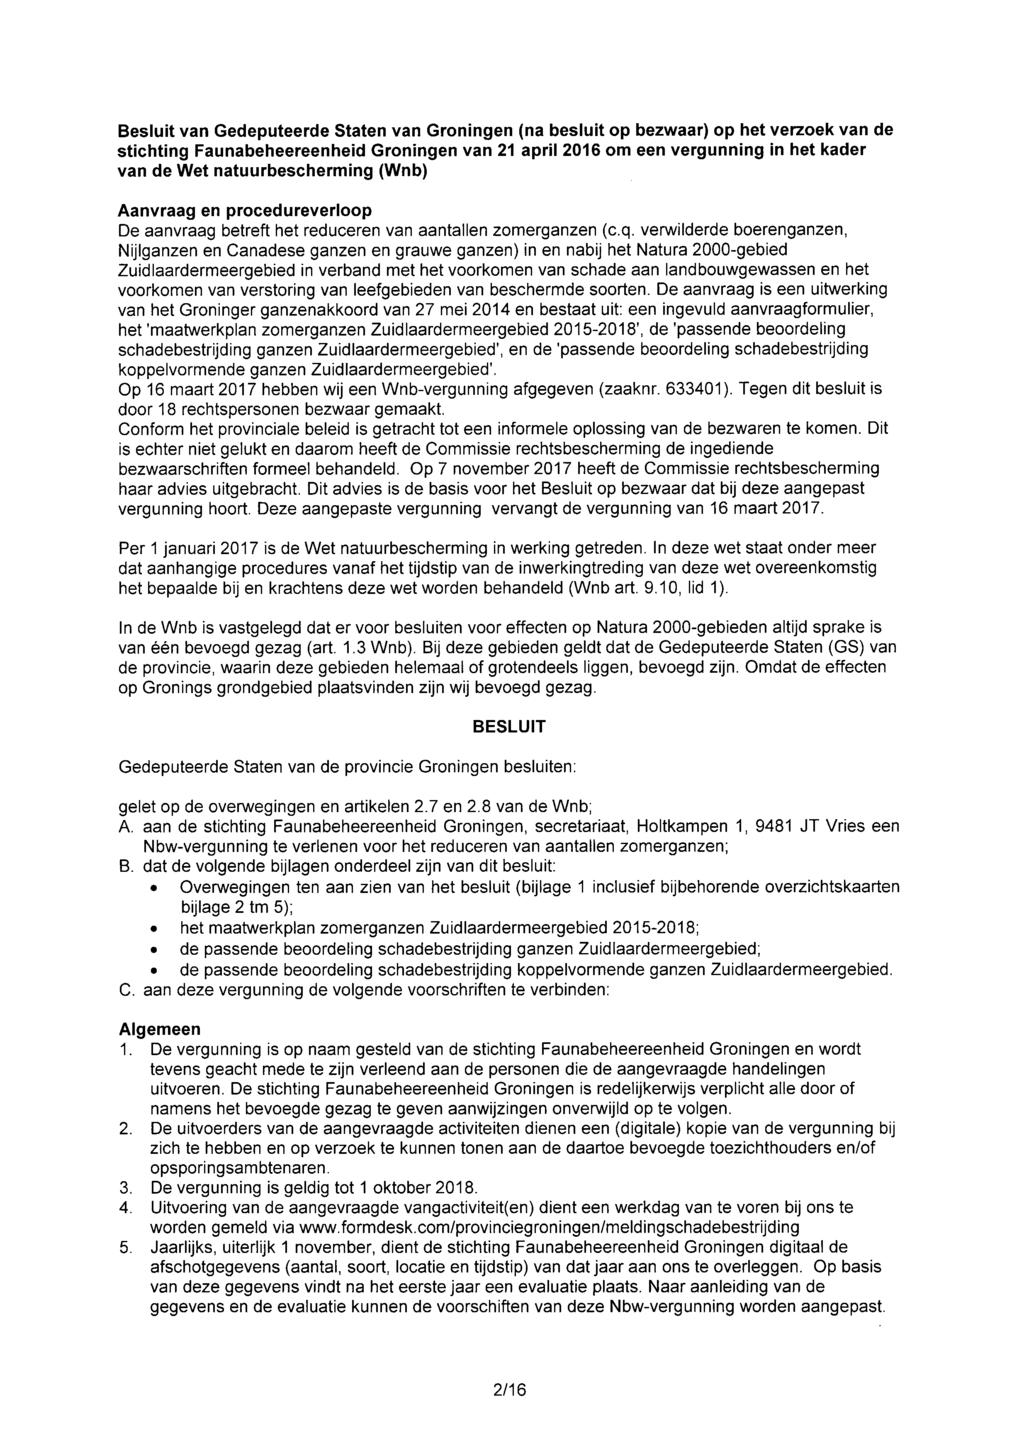 Besluit van Gedeputeerde Staten van Groningen (na besiuit op bezwaar) op het verzoek van de stichting Faunabeheereenheid Groningen van 21 aprii 2016 om een vergunning in het kader van de Wet